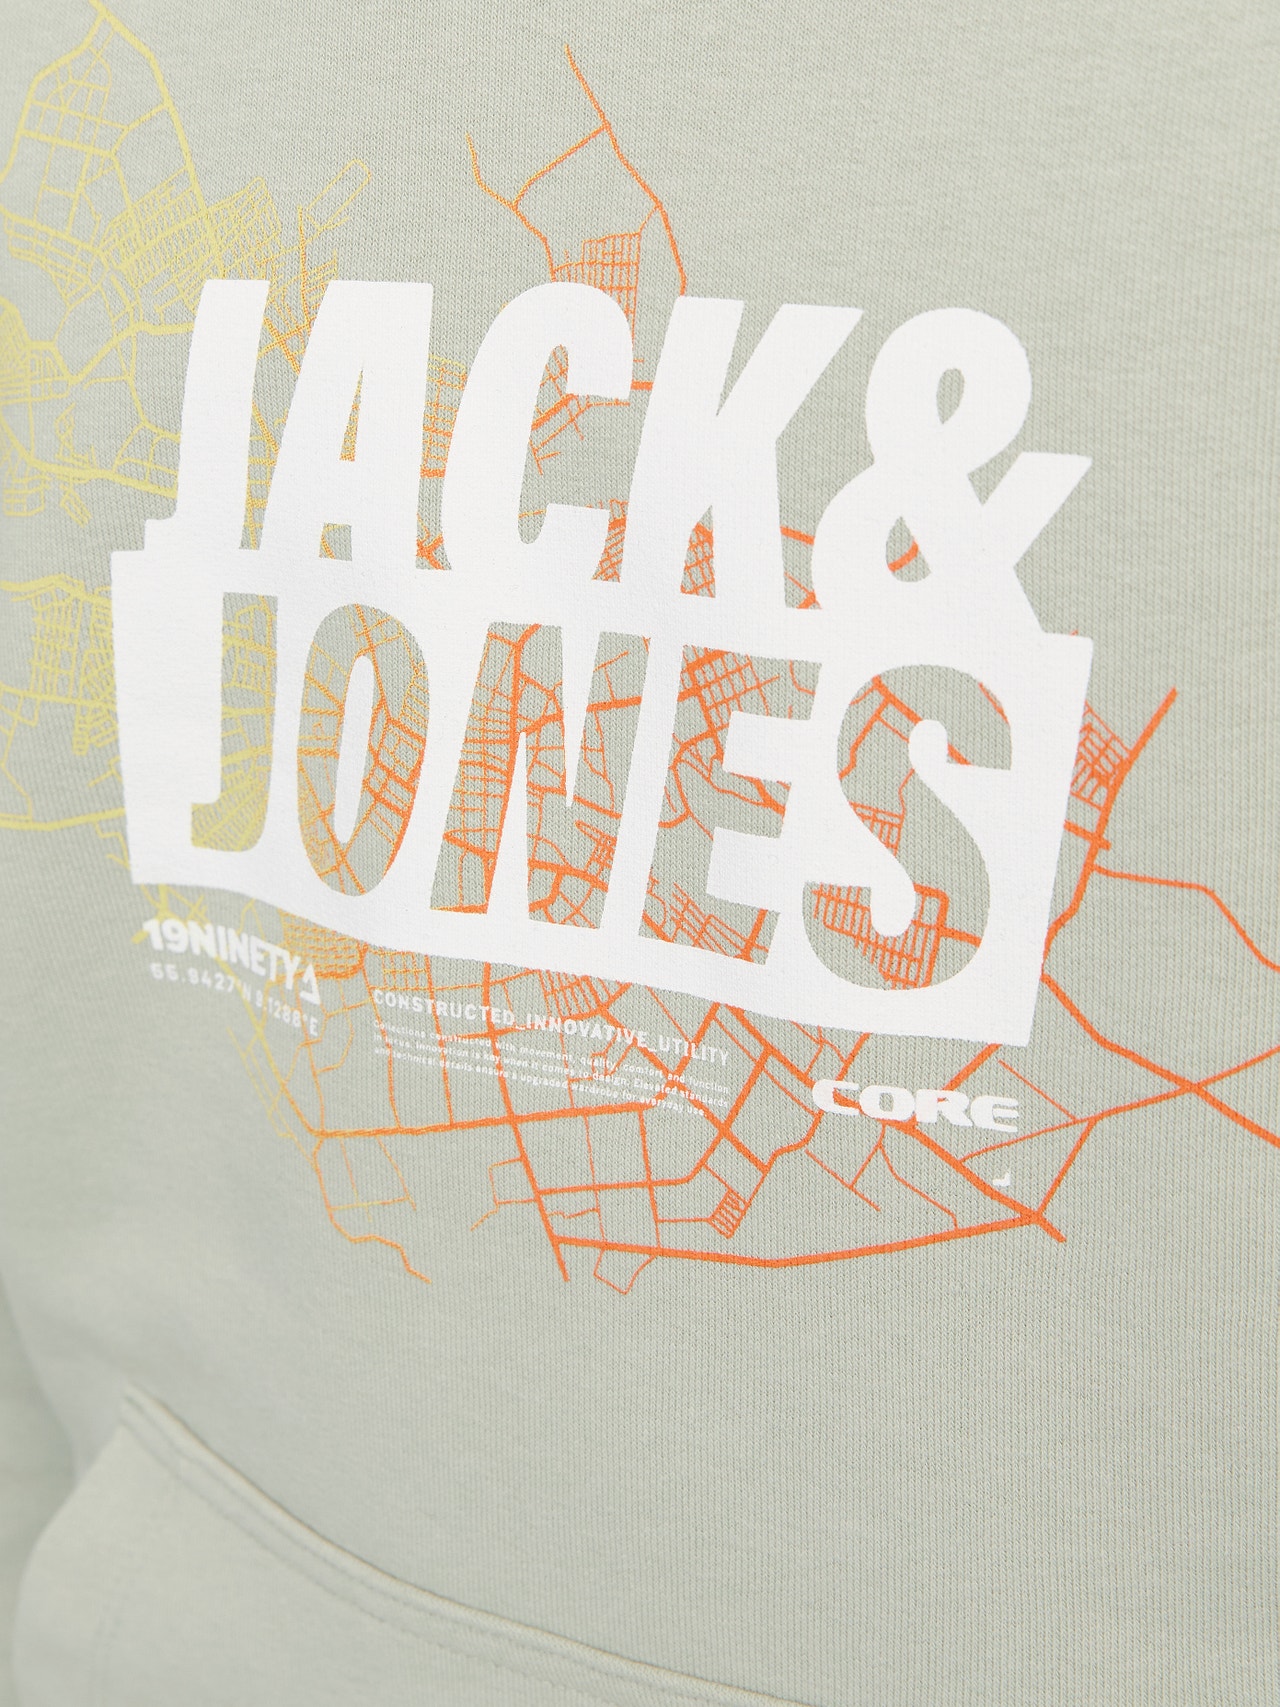 Jack & Jones Gedruckt Kapuzenpullover Für jungs -Desert Sage - 12253990